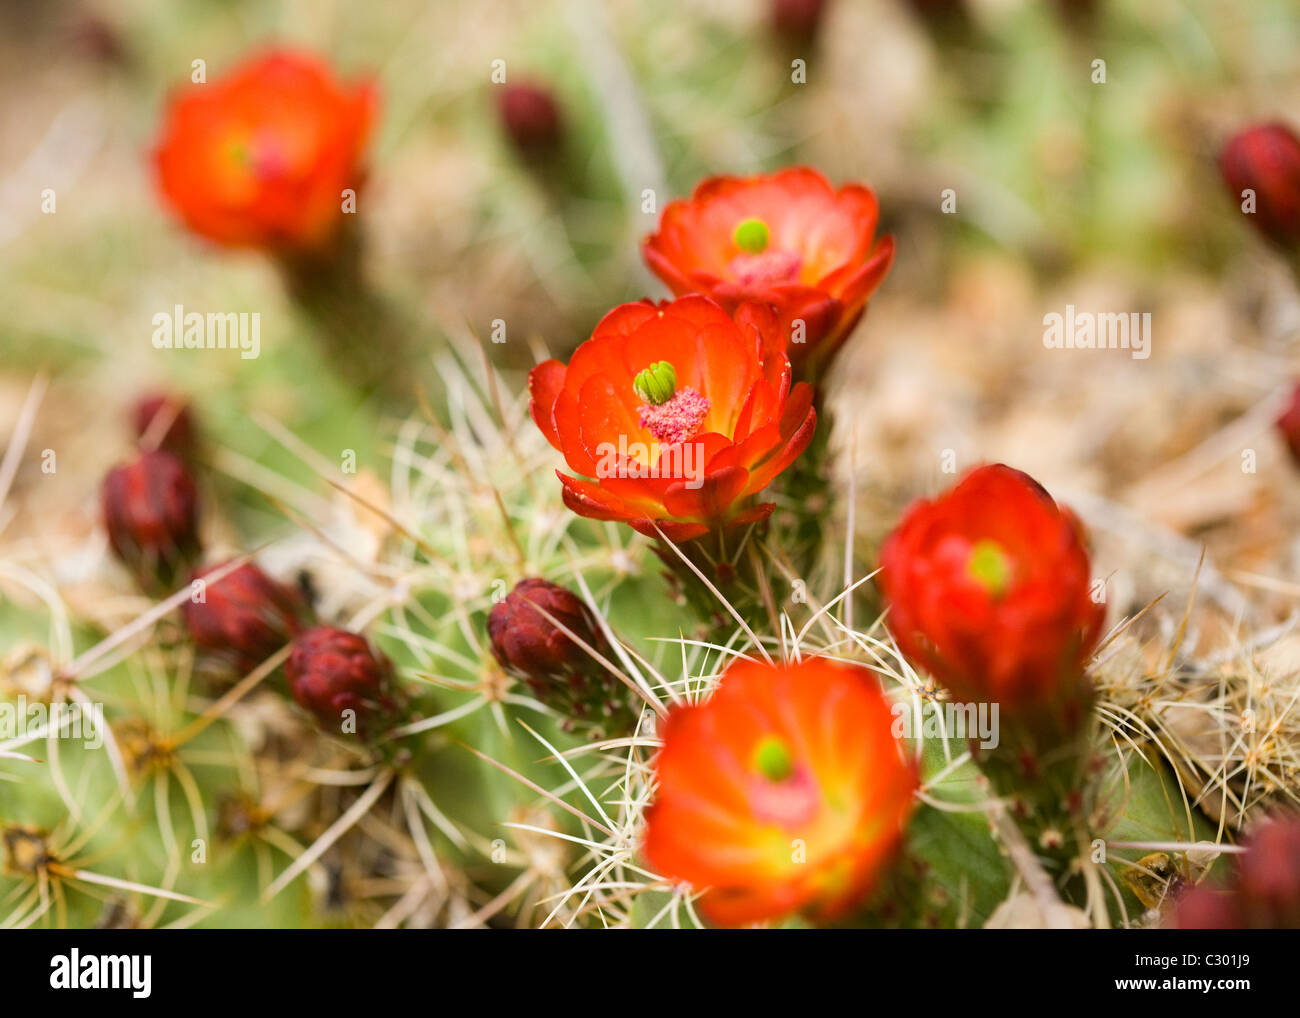 Monticule de Mojave cactus (Claret Cup) fleurit en printemps - désert de Mojave, Californie, USA Banque D'Images